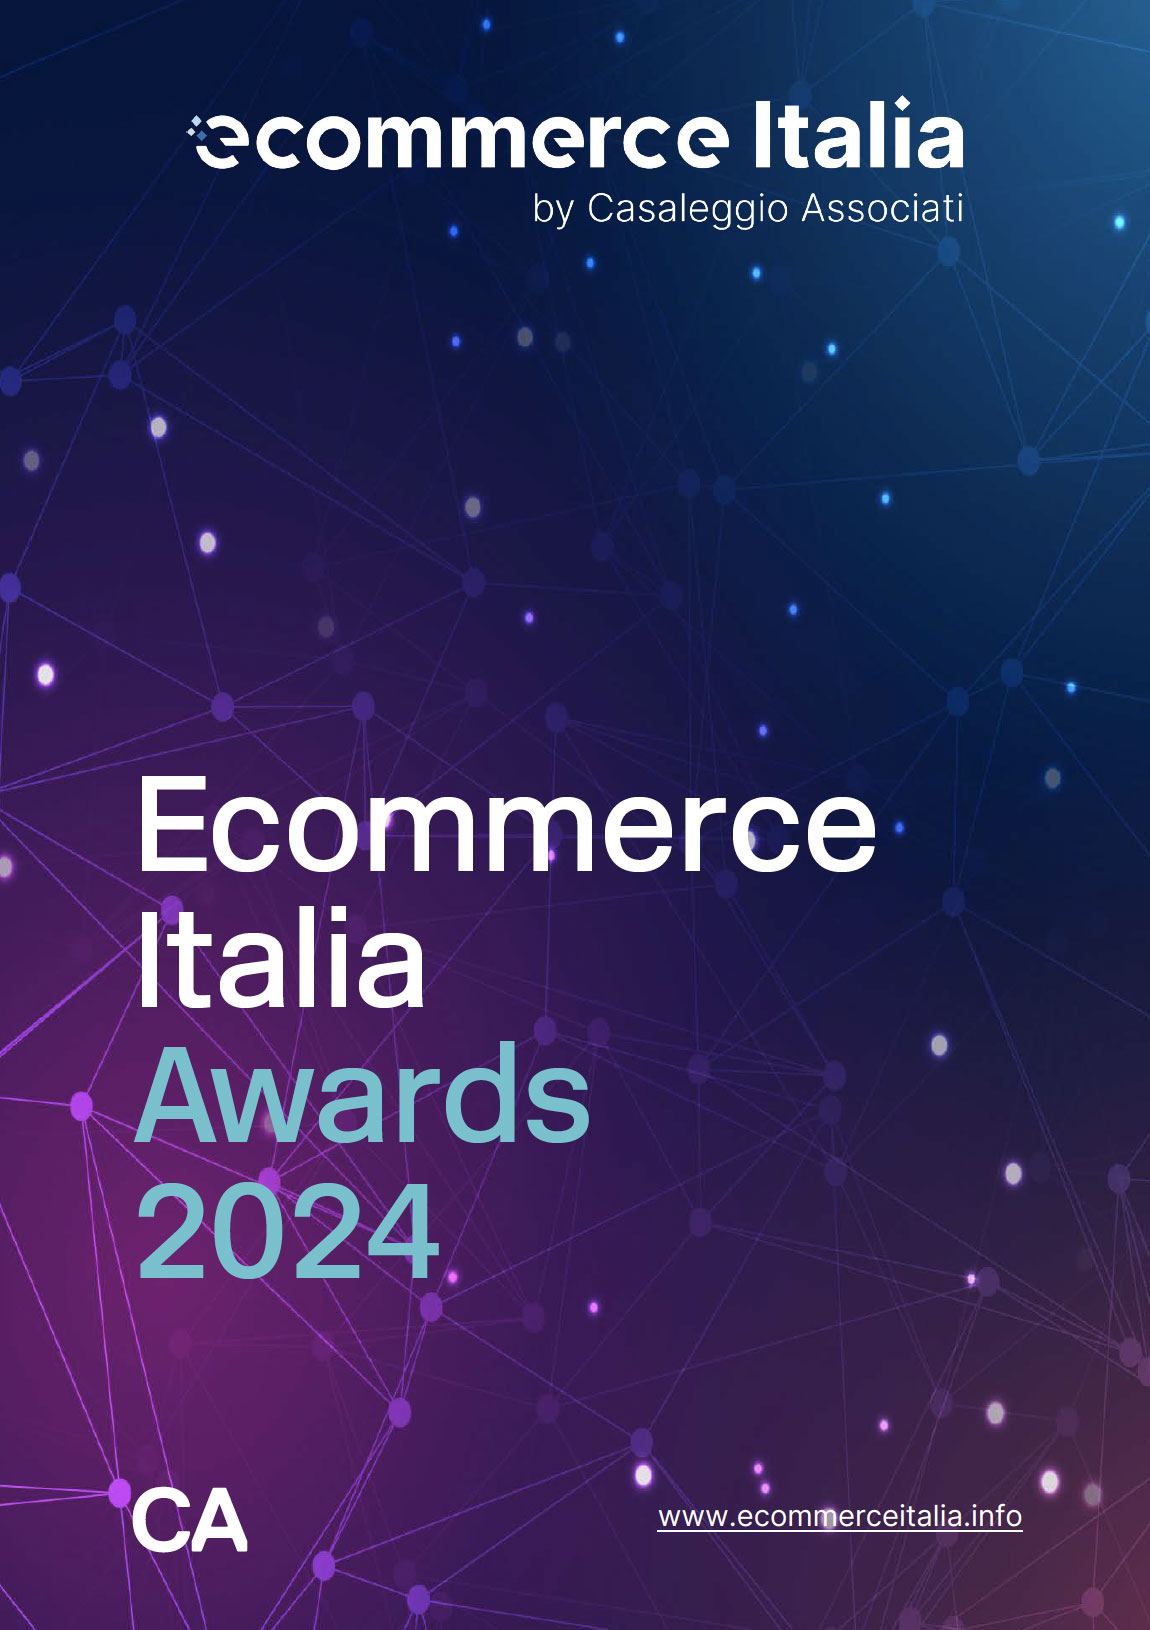 Ecommerce Italia Awards 2024